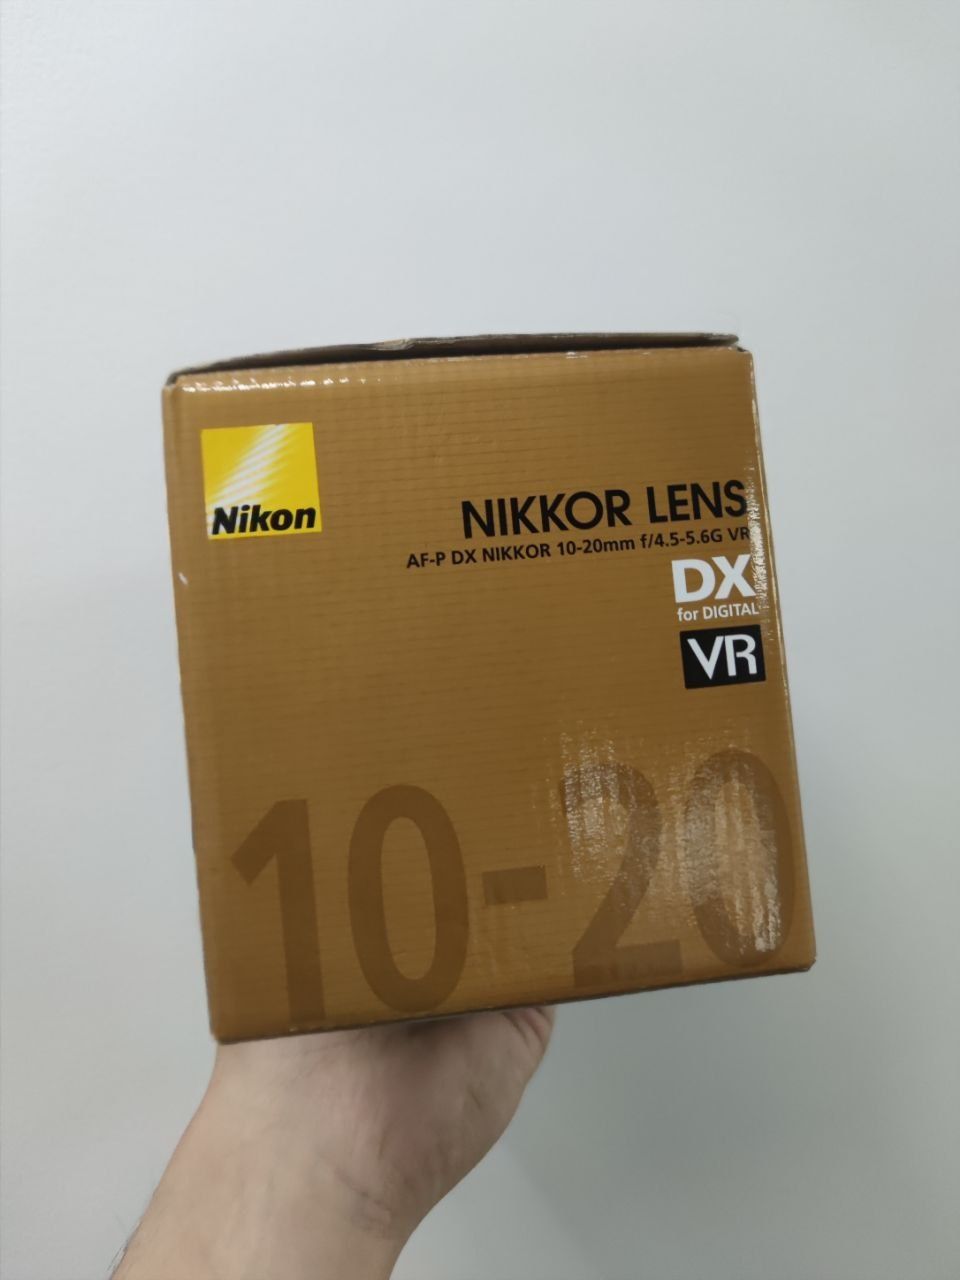 Obiectiv Nikon Nikkor Lens 10-20mm f/4.5-5.6G VR AF-P DX Sigilat!